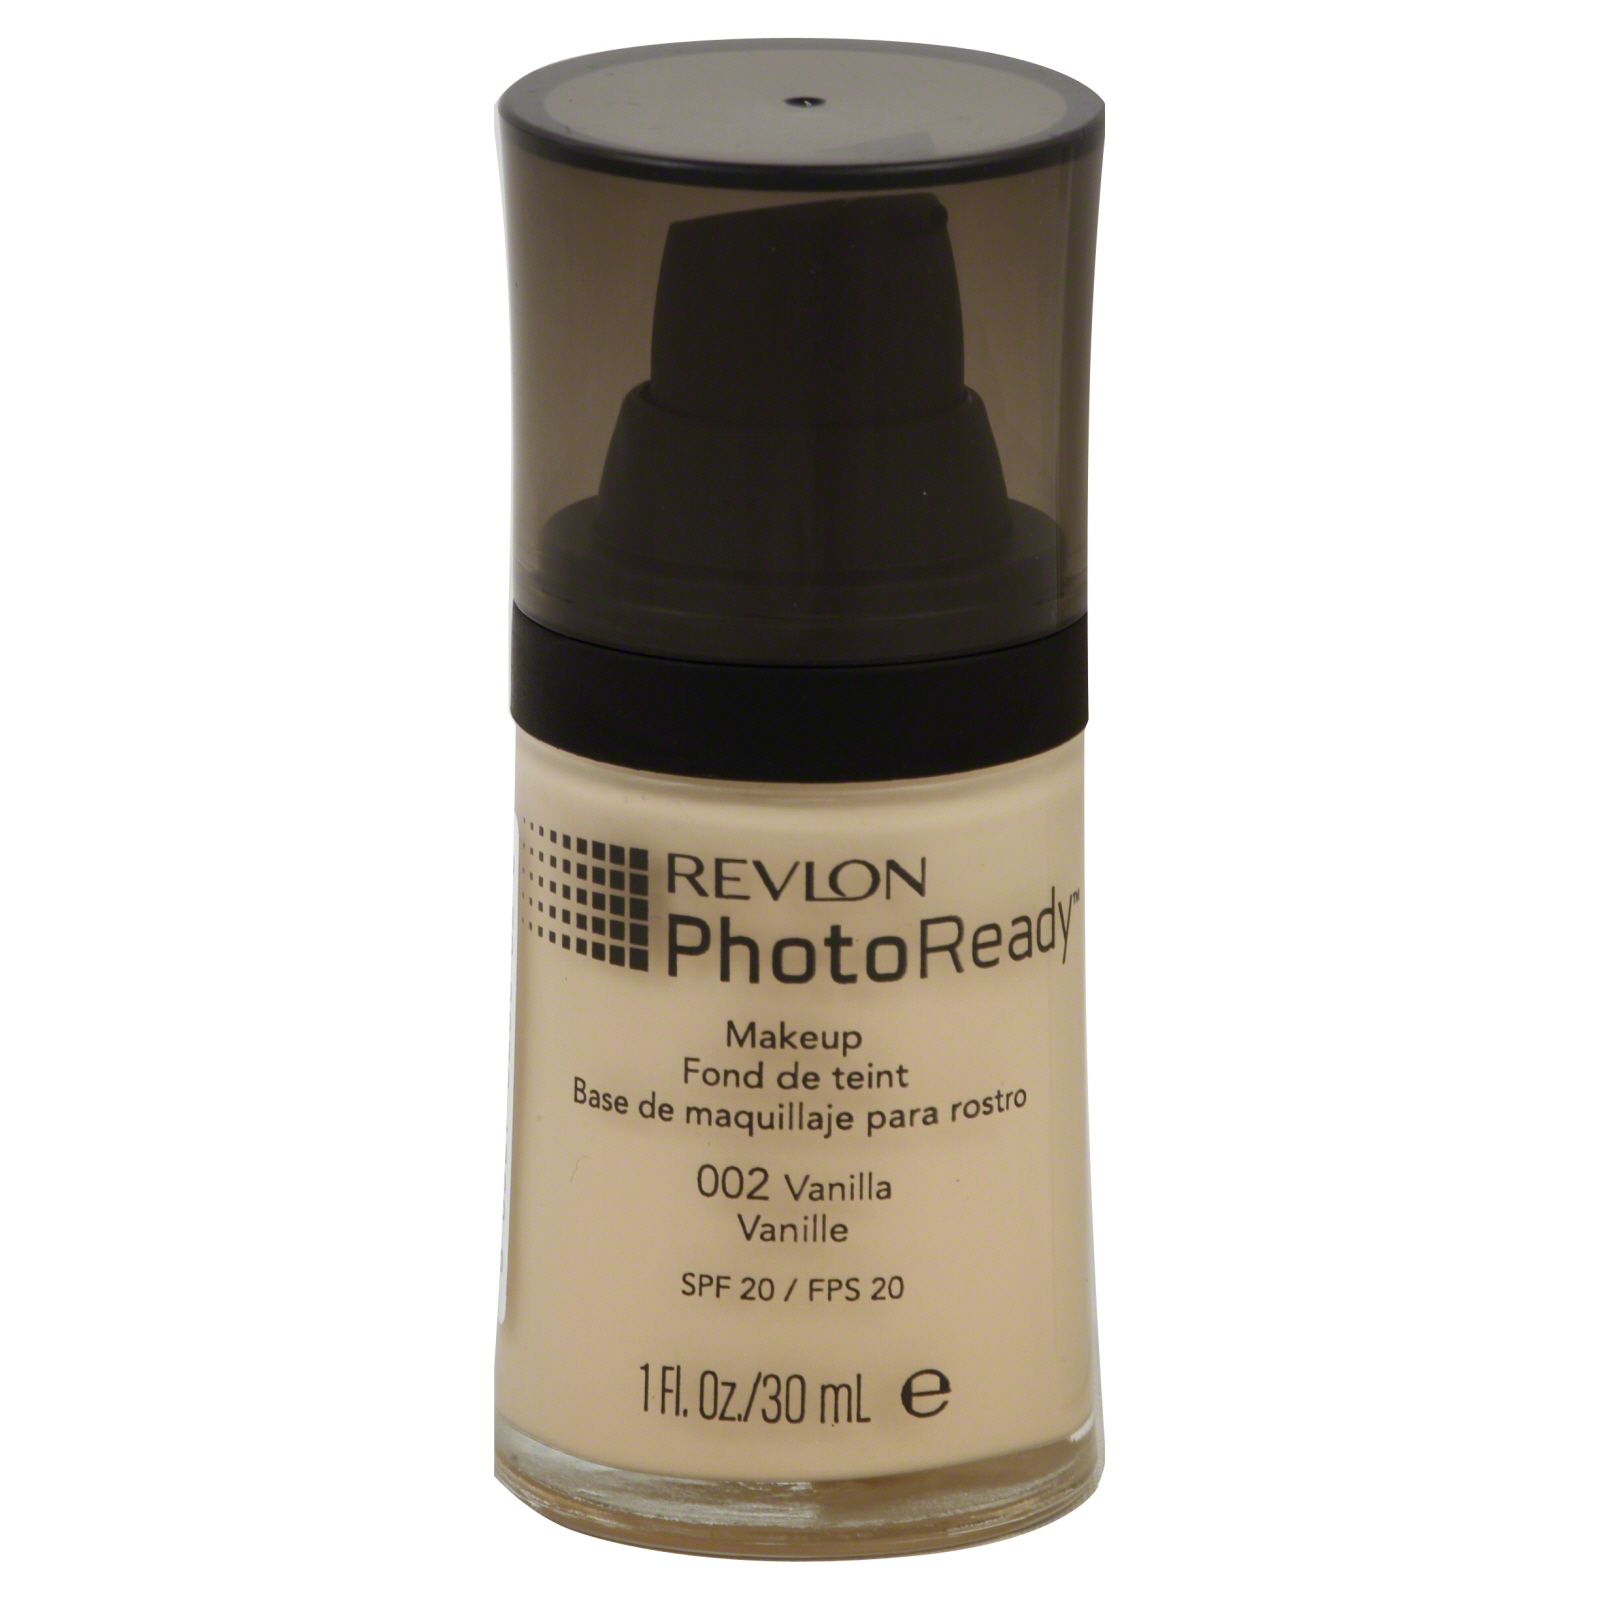 Revlon PhotoReady Makeup, Vanilla, 1 fl oz